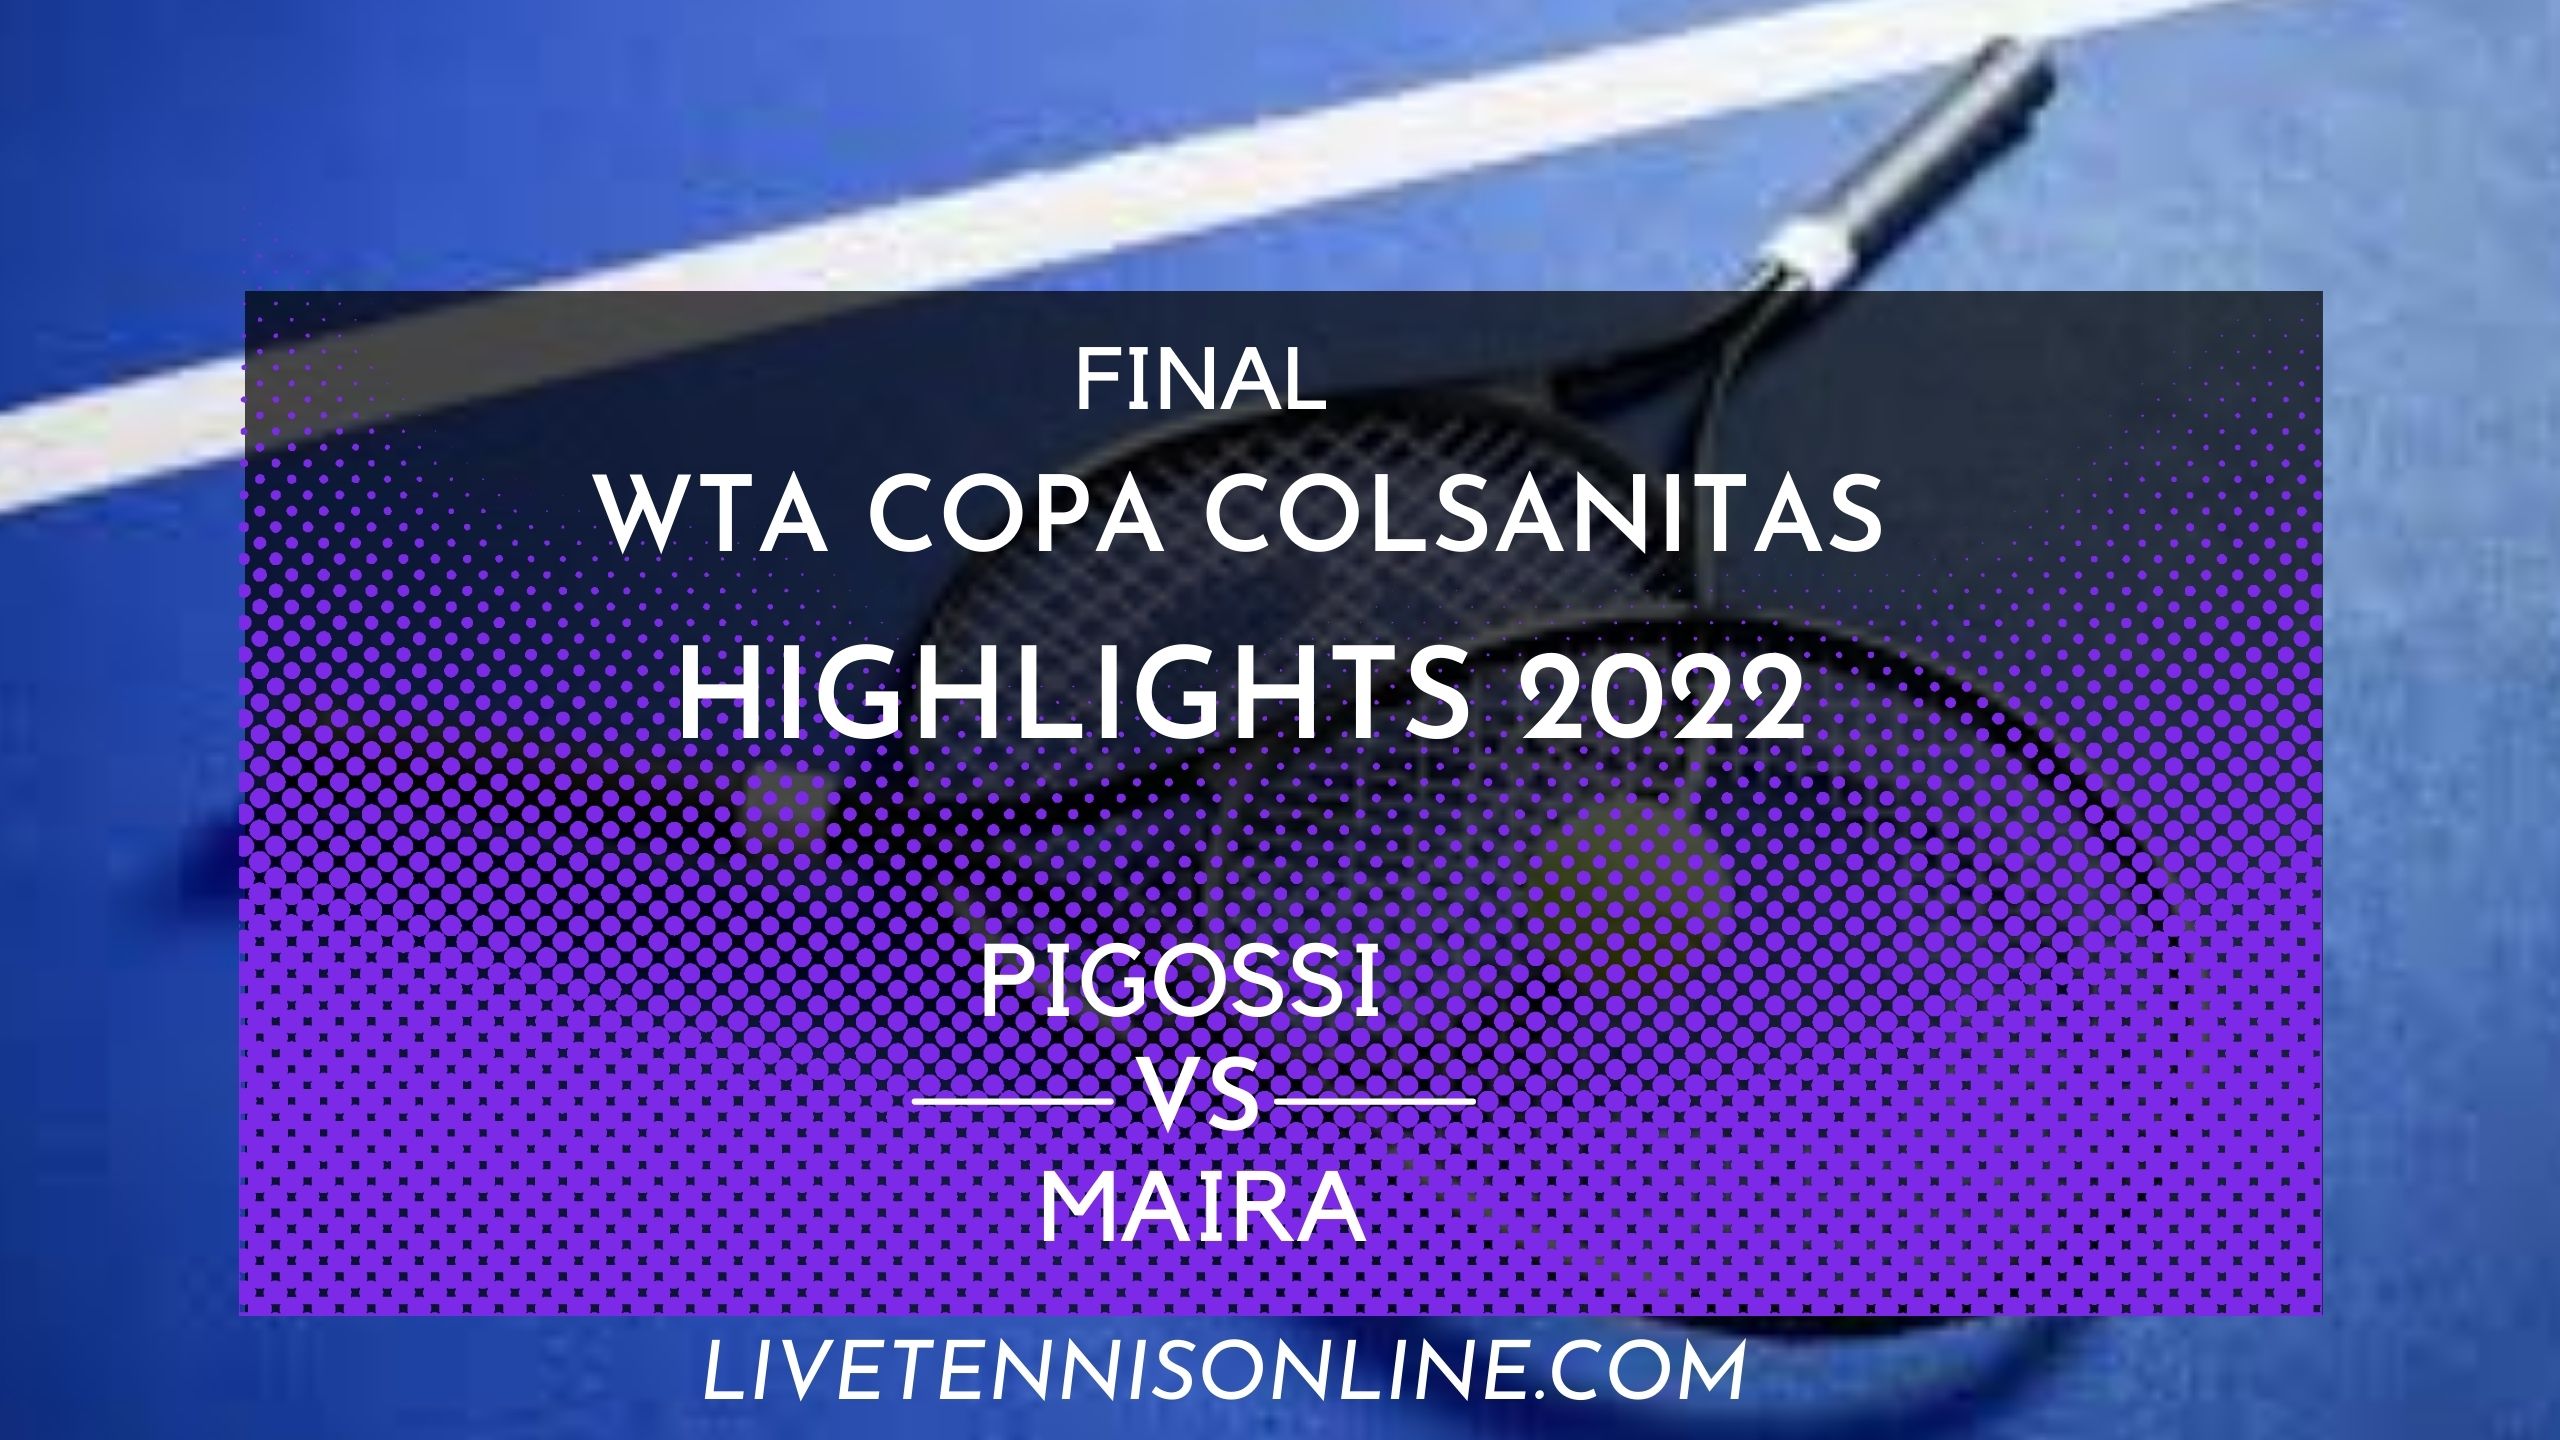 Pigossi Vs Maira Final Highlights 2022